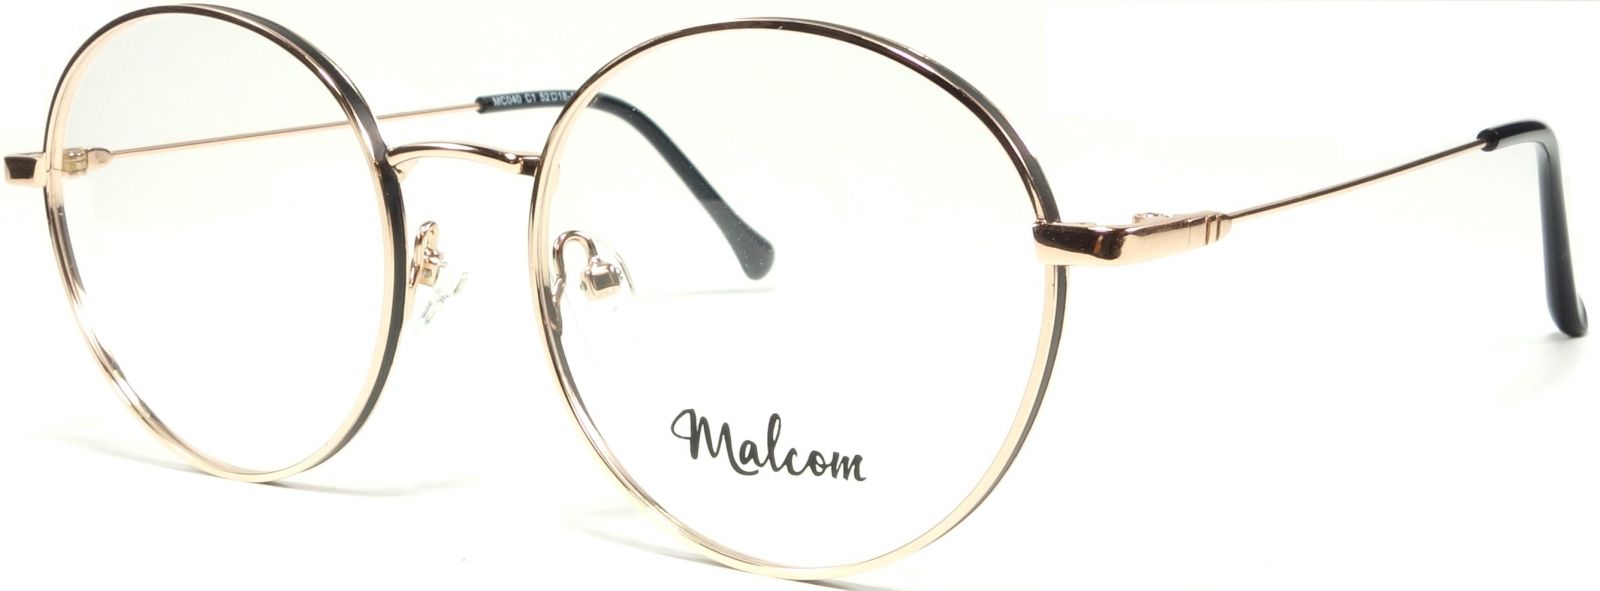 Luxusní obruba z kolekce "MALCOM" - MC040